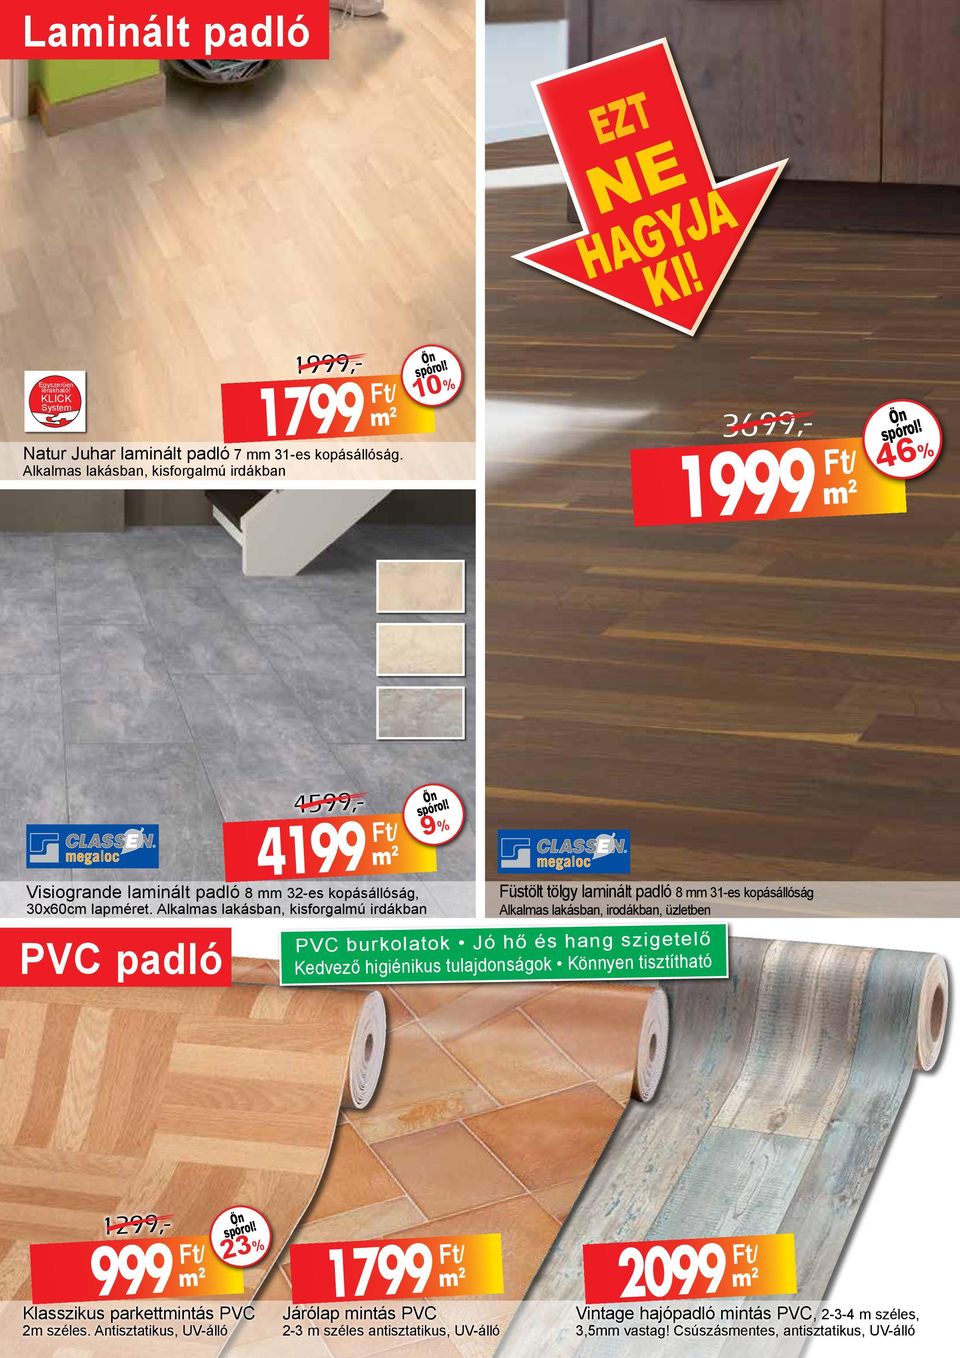 Alkalmas lakásban, kisforgalmú irdákban PVC padló 4599,- 4199 Ft/ 9% Füstölt tölgy laminált padló 8 mm 31-es kopásállóság Alkalmas lakásban, irodákban, üzletben PVC burkolatok Jó hő és hang